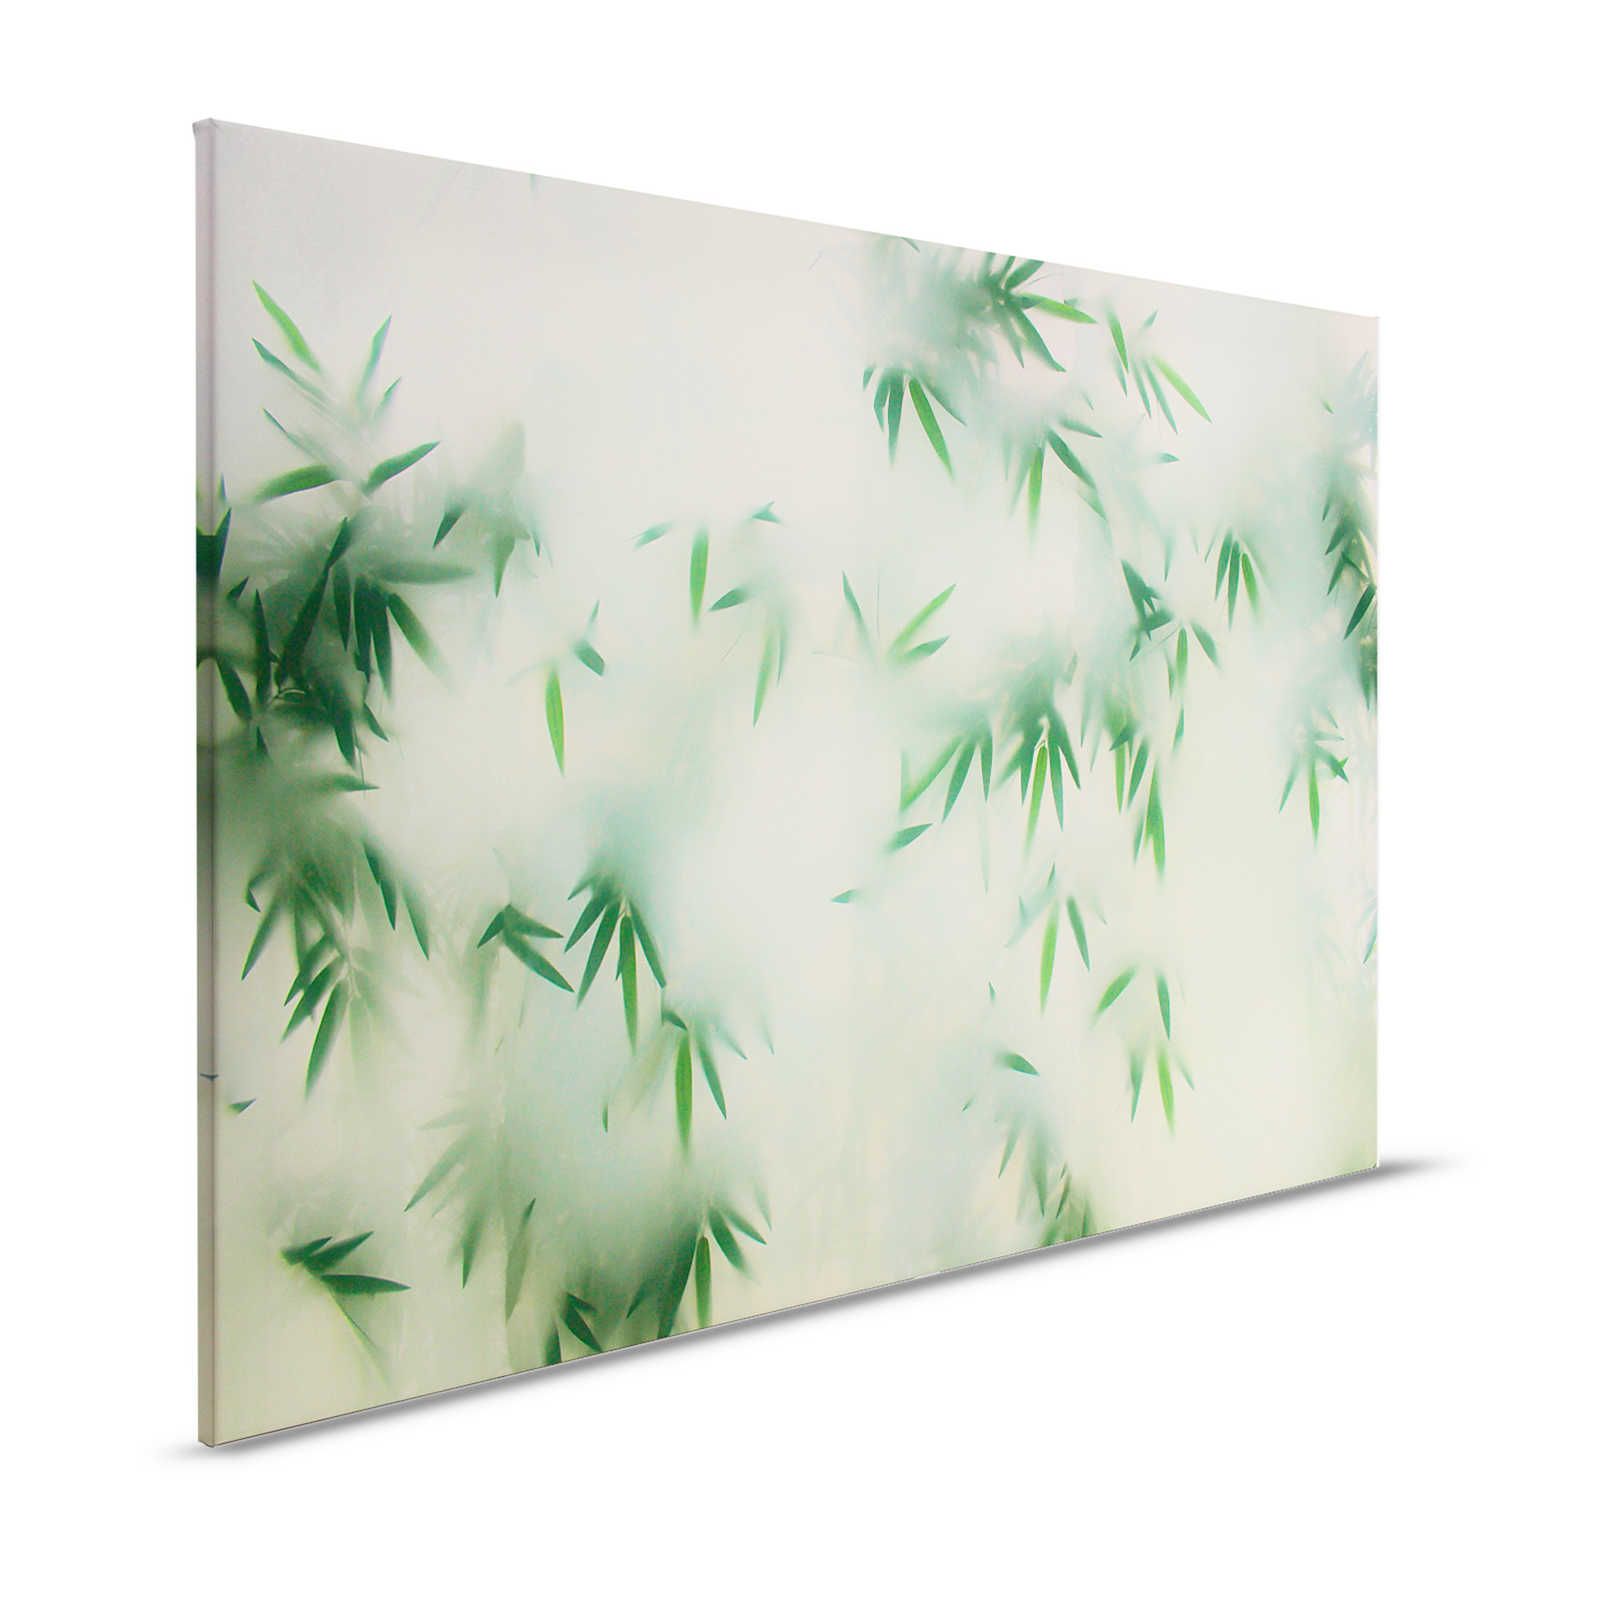 Panda Paradise 2 - Tableau toile bambou vert dans la brume - 1,20 m x 0,80 m
